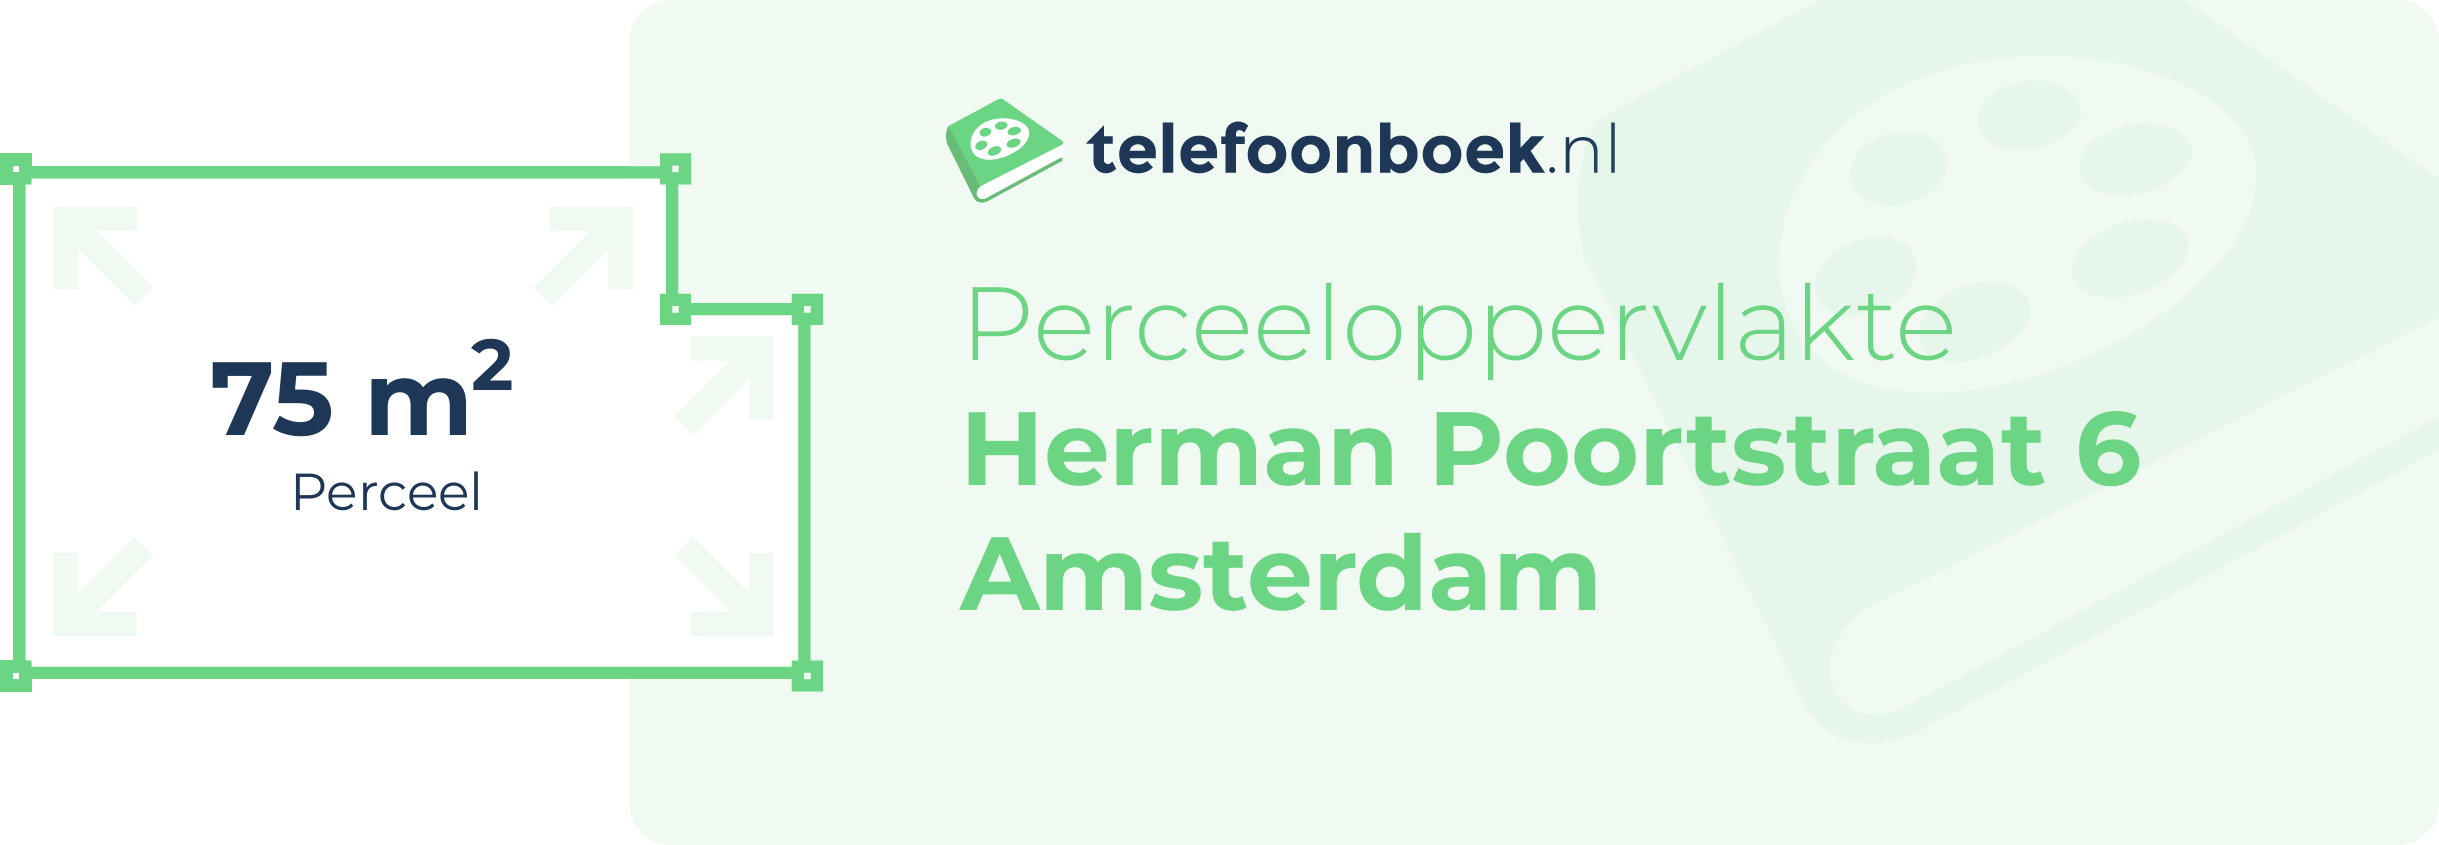 Perceeloppervlakte Herman Poortstraat 6 Amsterdam